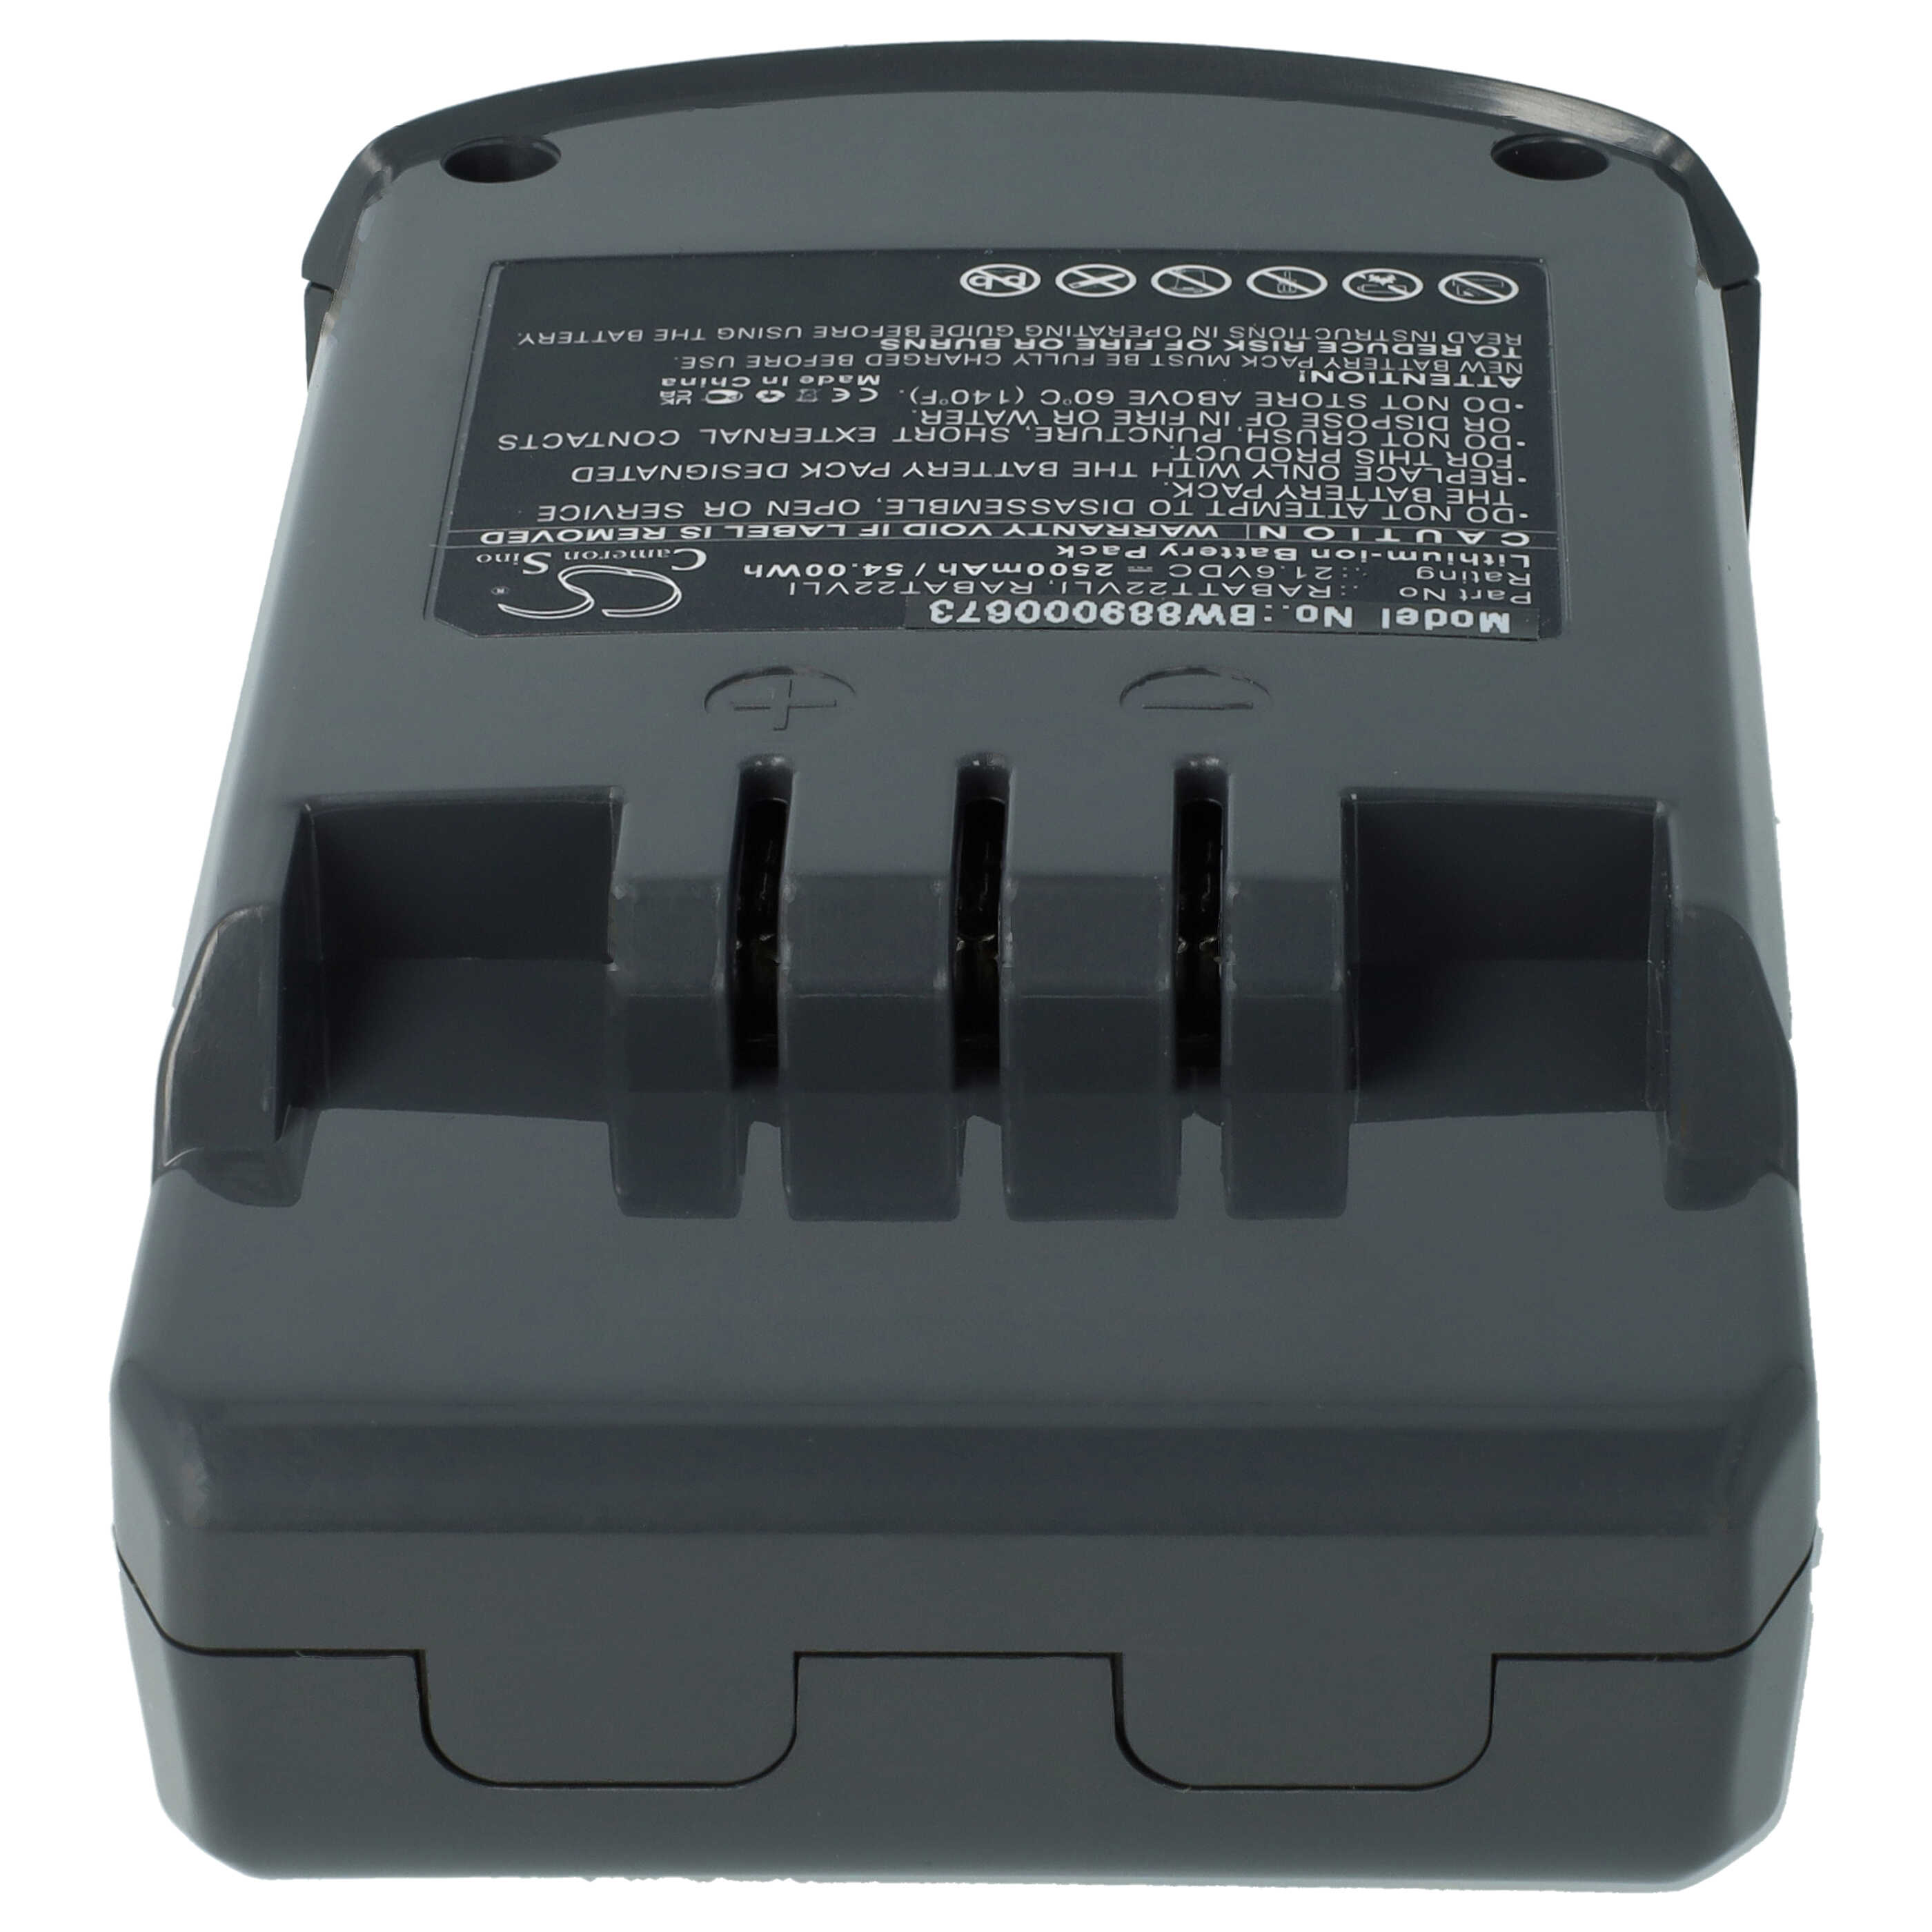 Battery Replacement for Hoover RABAT22VLI, RABATT22VLI, 6.20.40.01-0, 48023809 for - 2500mAh, 21.6V, Li-Ion